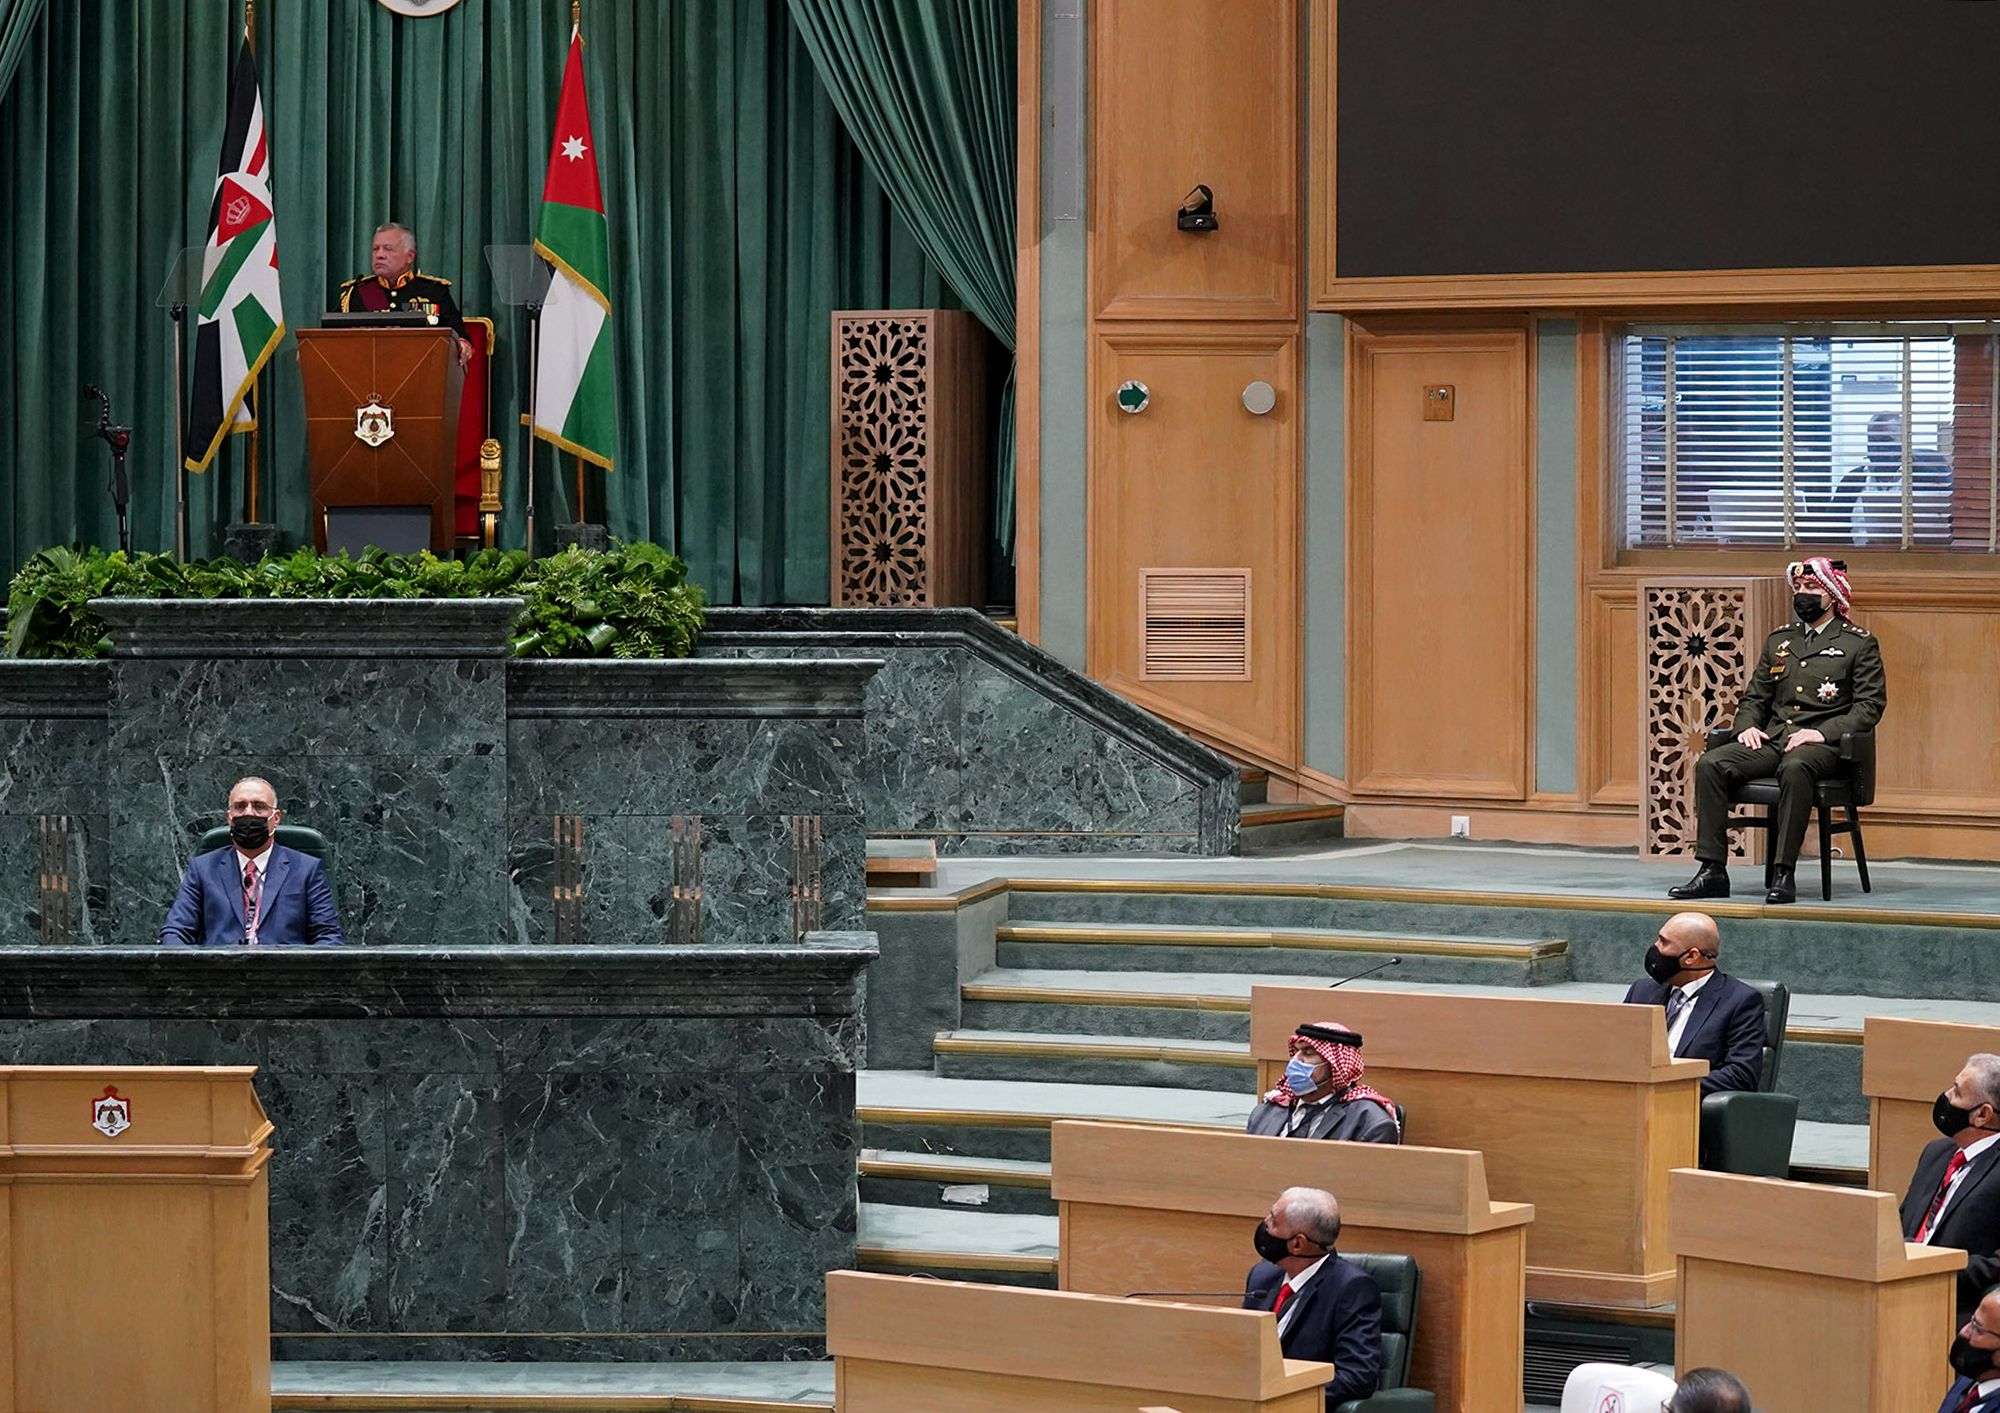 المستقبل السياسي للأردن بين يدي مجلس النواب الآن